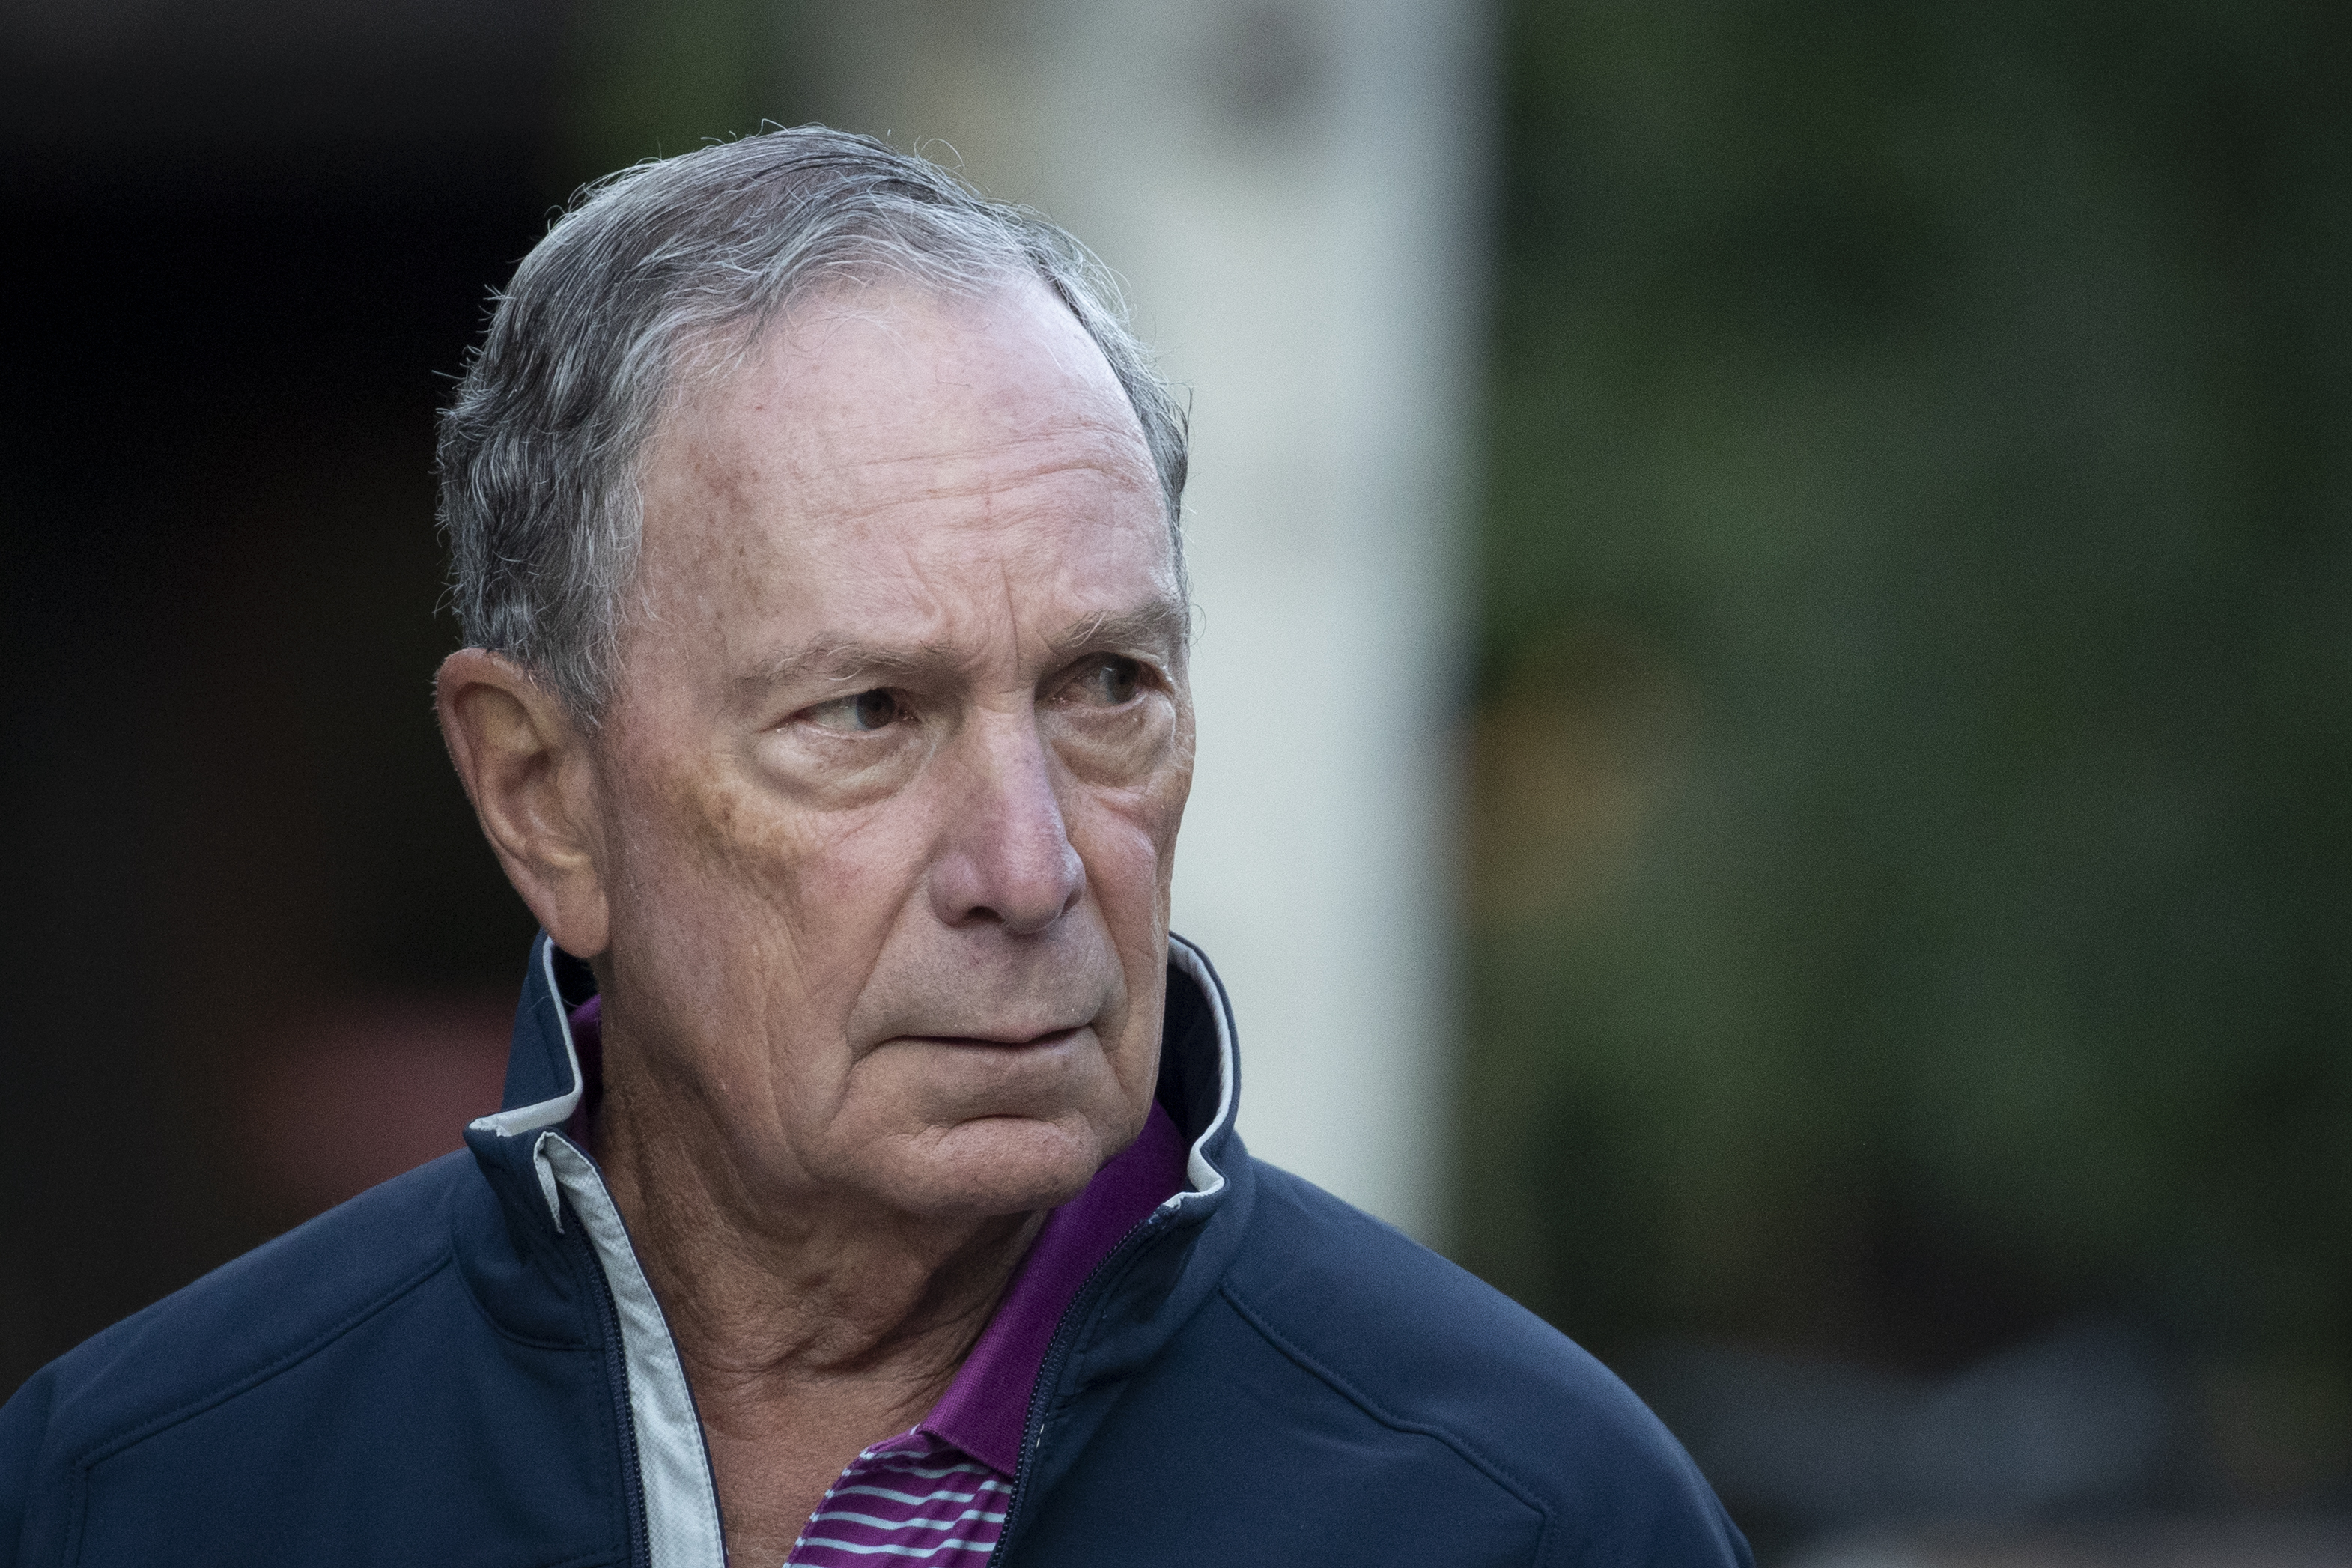 Michael Bloomberg, némi meglepetésre, az utolsó pillanatban mégis elindul az amerikai elnökválasztáson